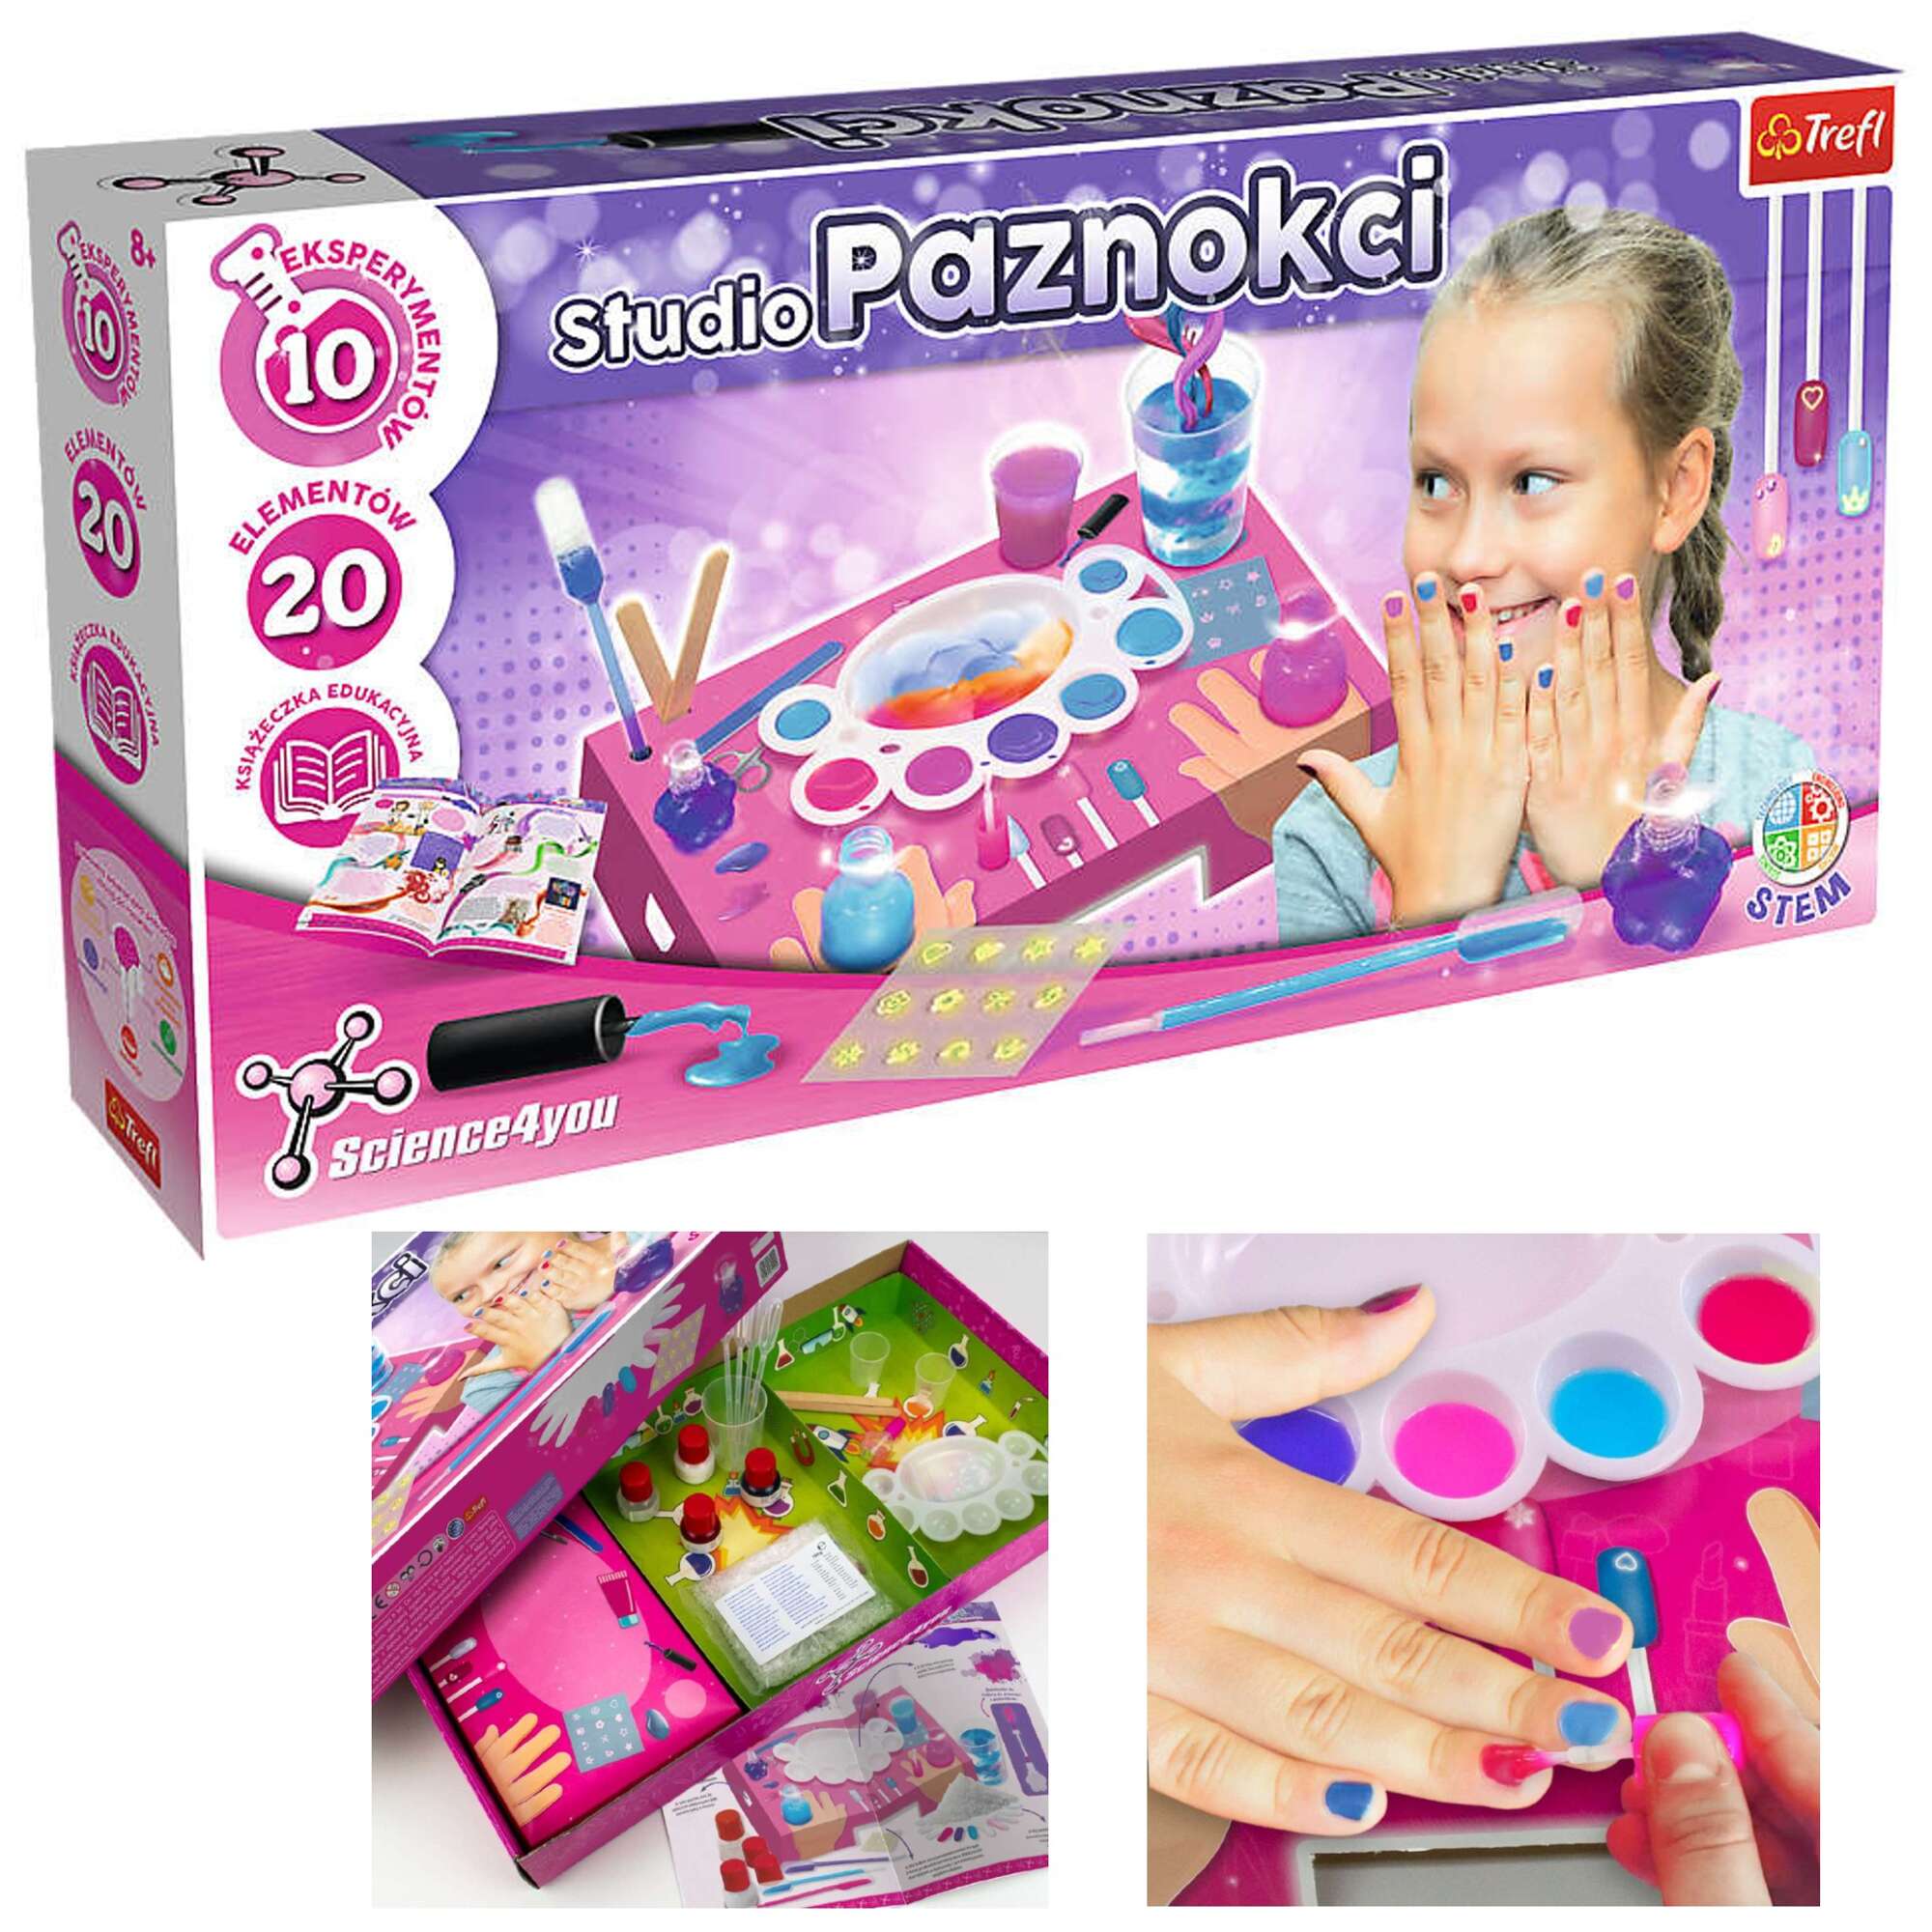 Zestaw do pielgnacji studio salon paznokci lakier dla dzieci dziewczynki Science4you Trefl